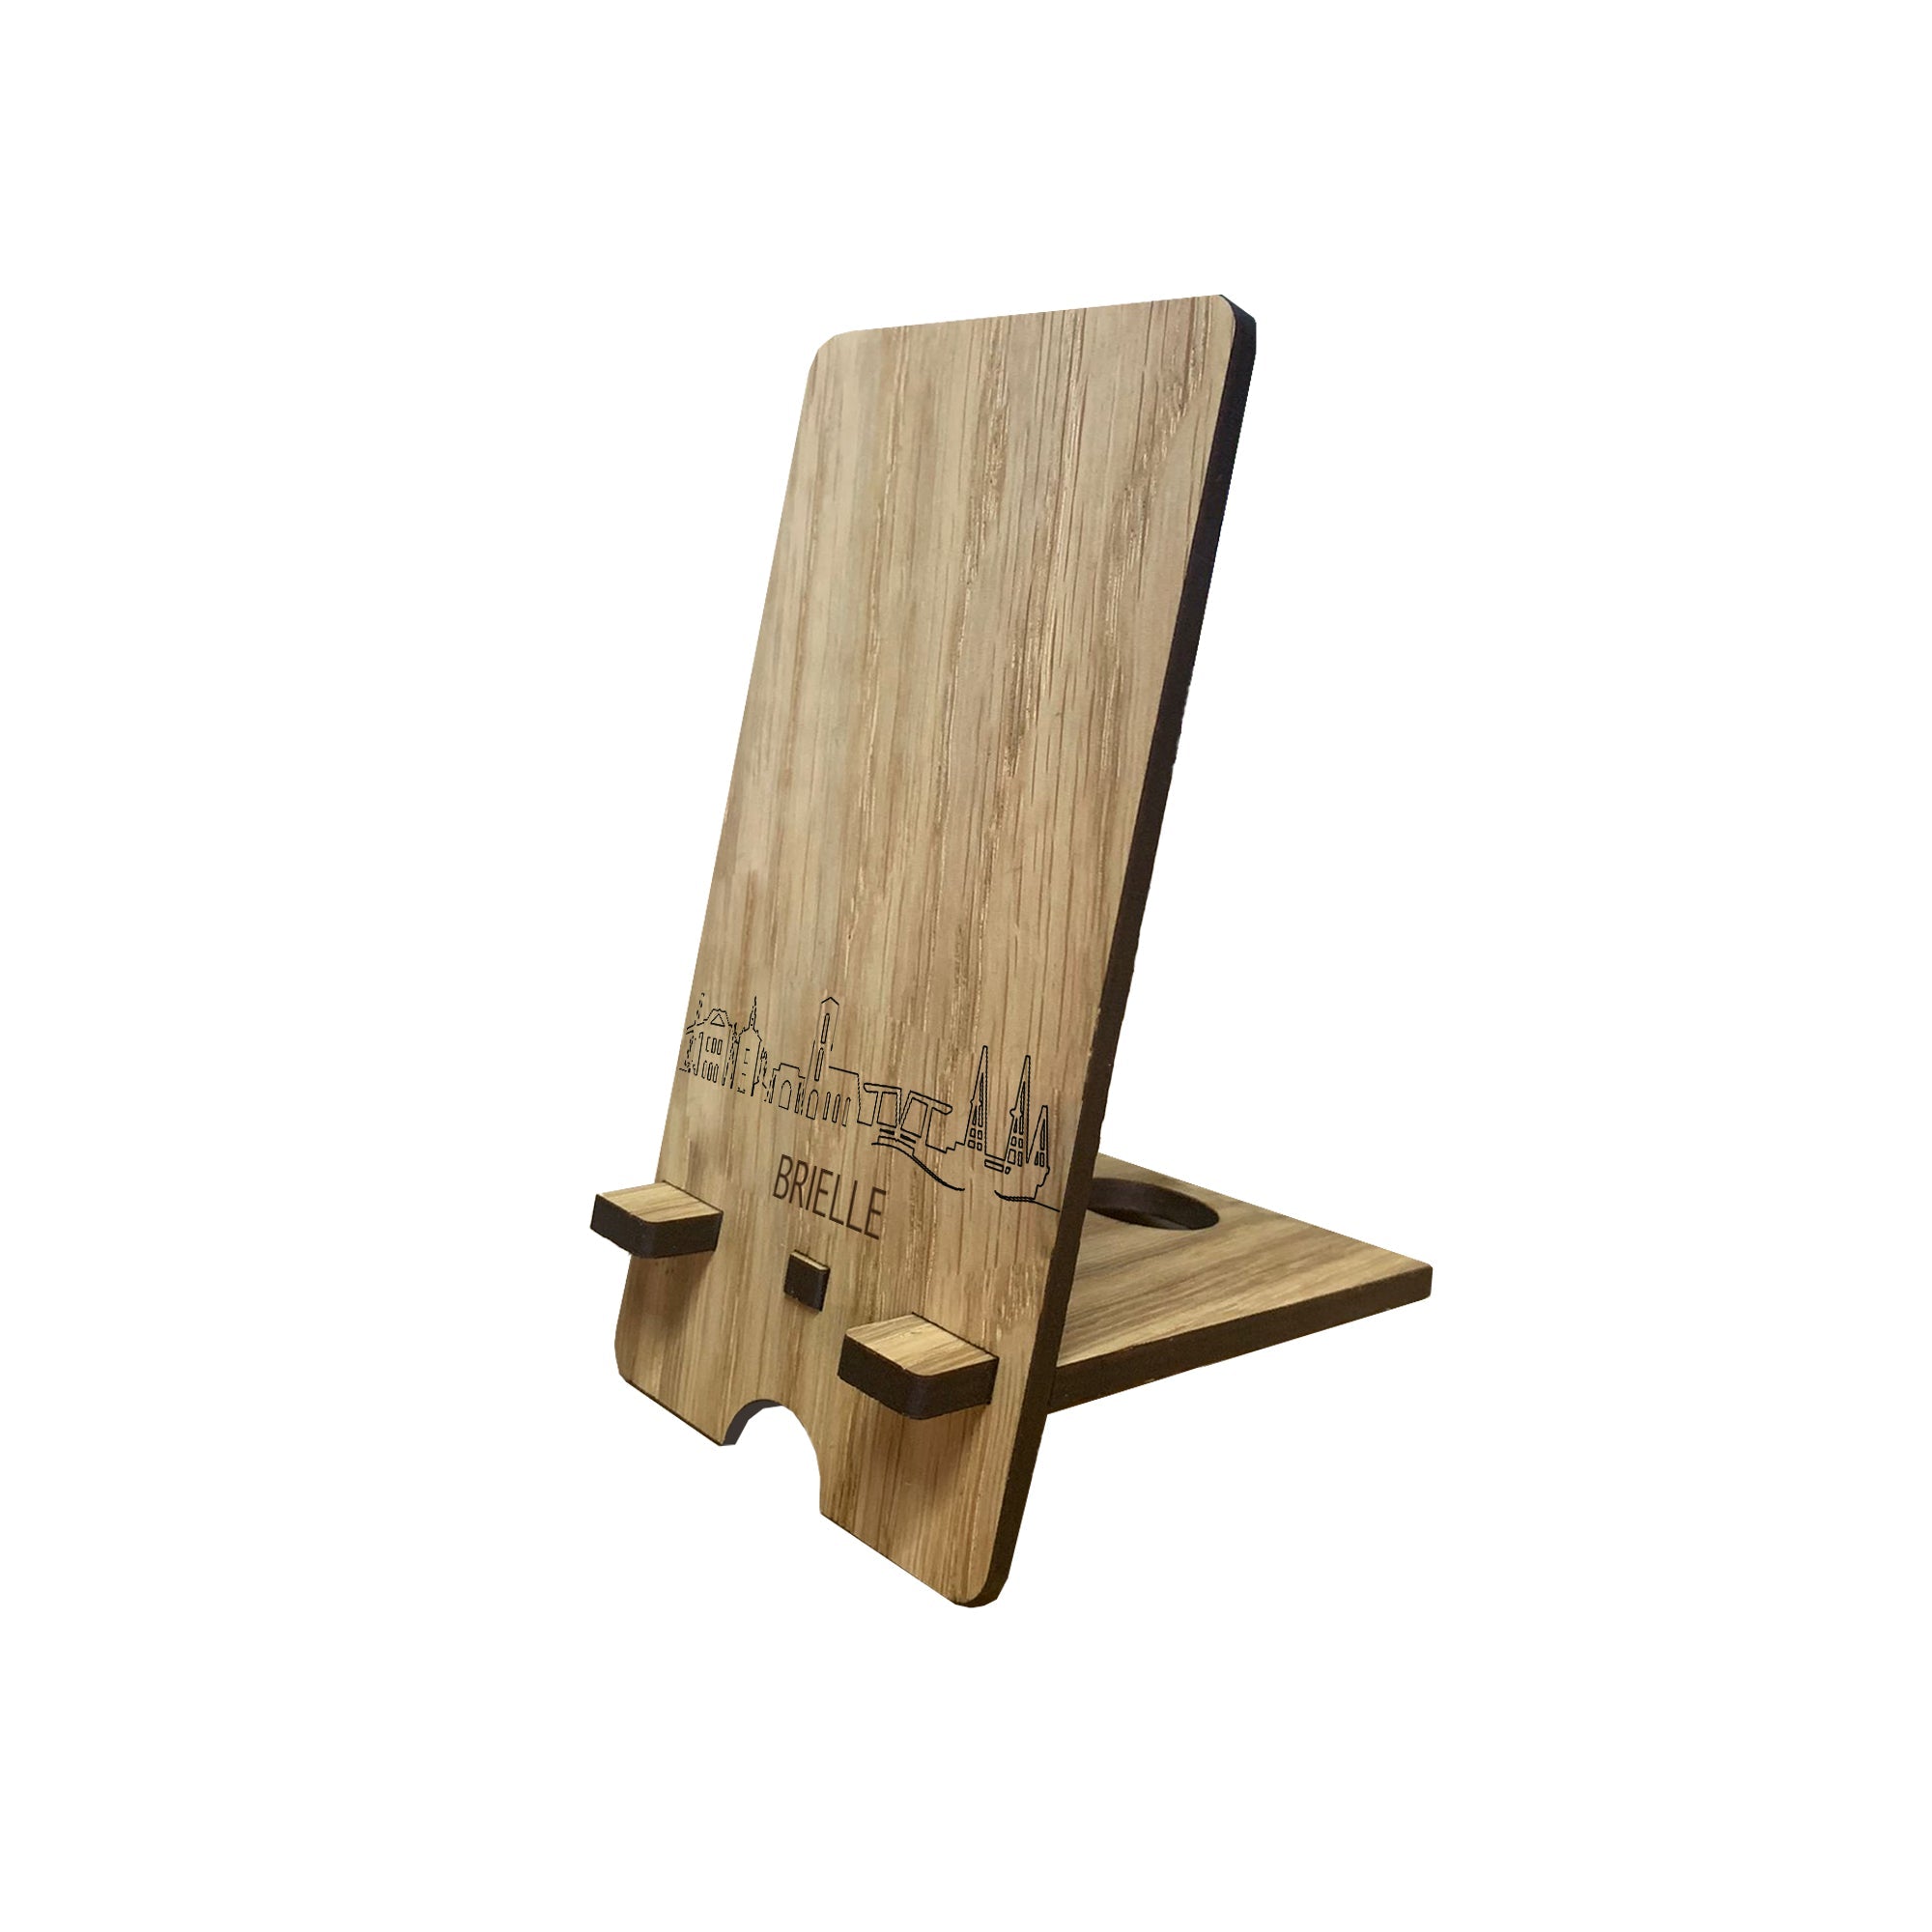 Skyline Telefoonhouder Brielle Eiken houten cadeau decoratie relatiegeschenk van WoodWideCities